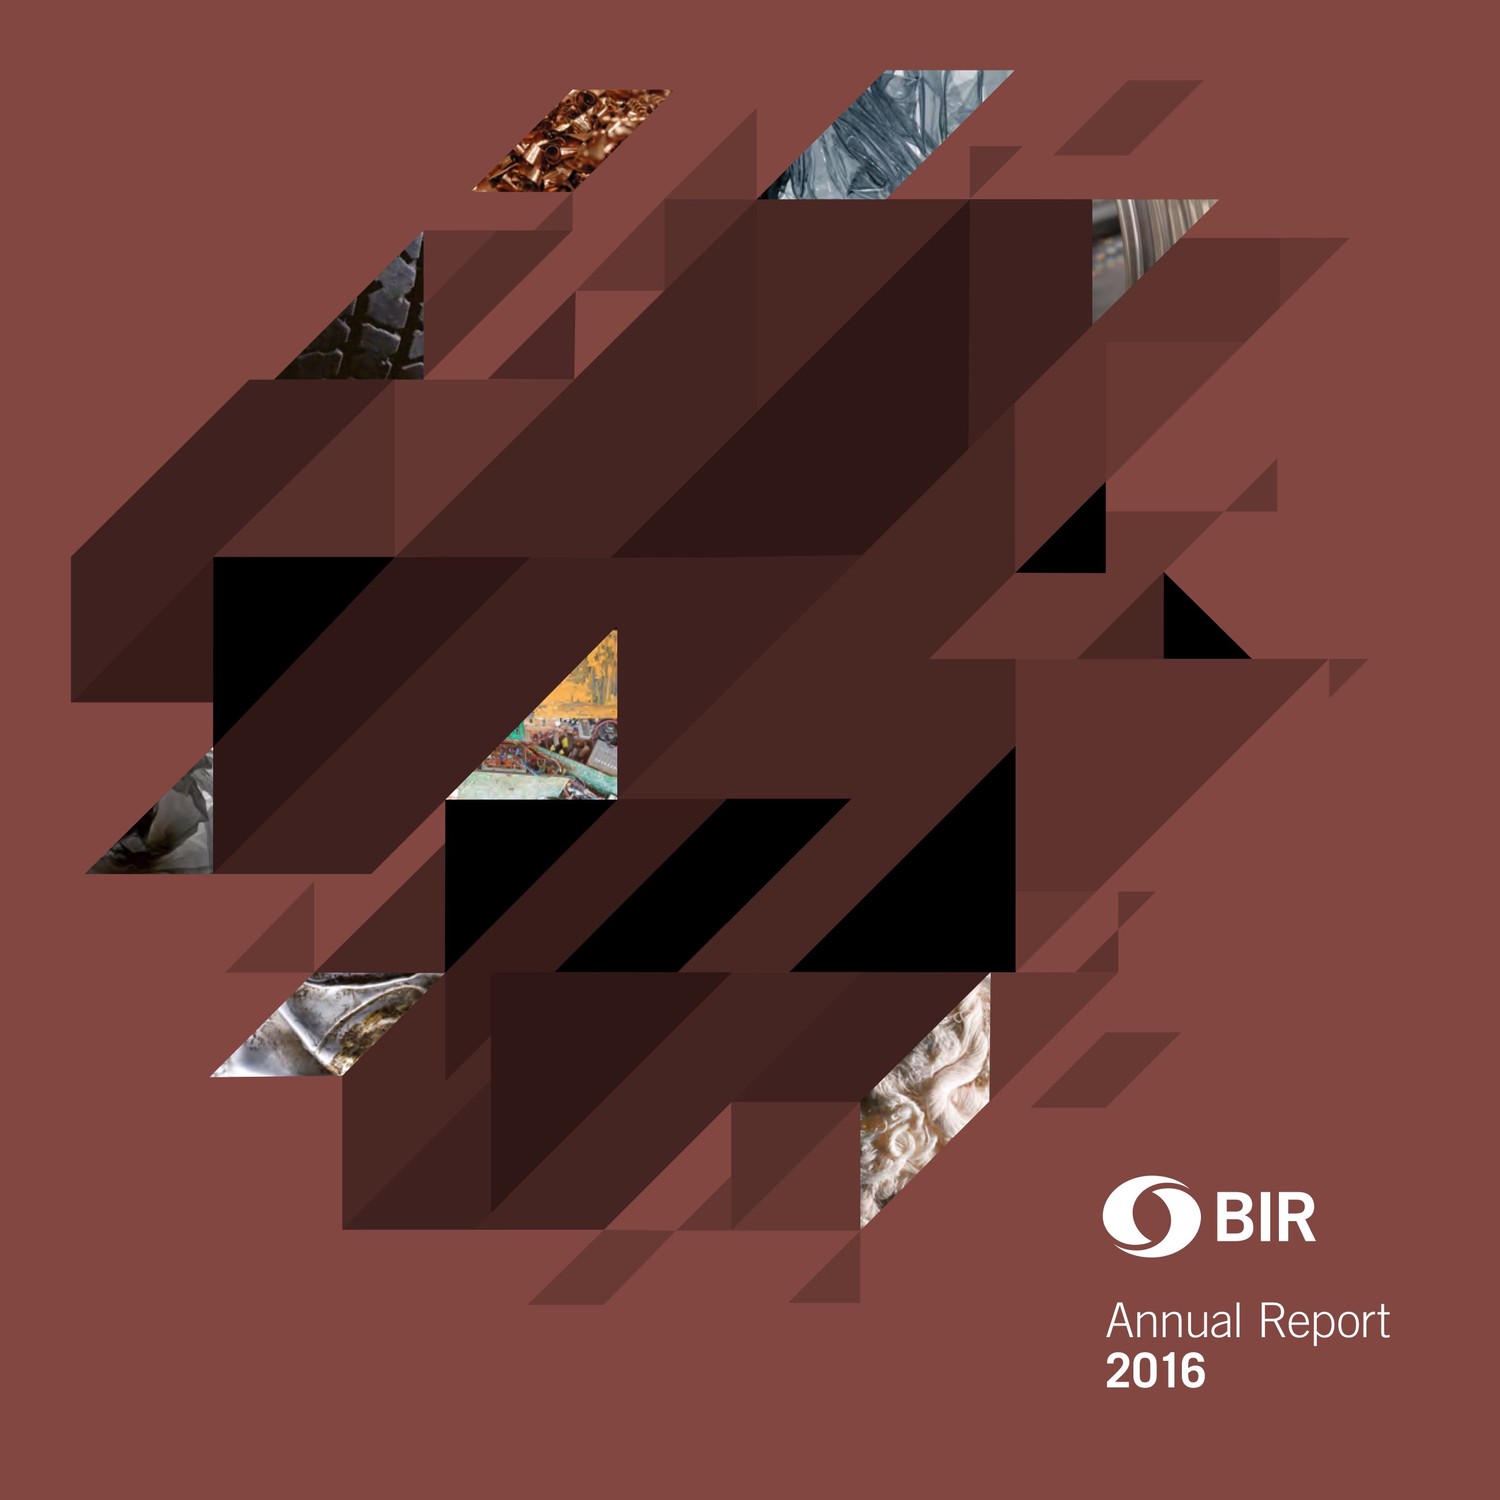 BIR 2016年度报告